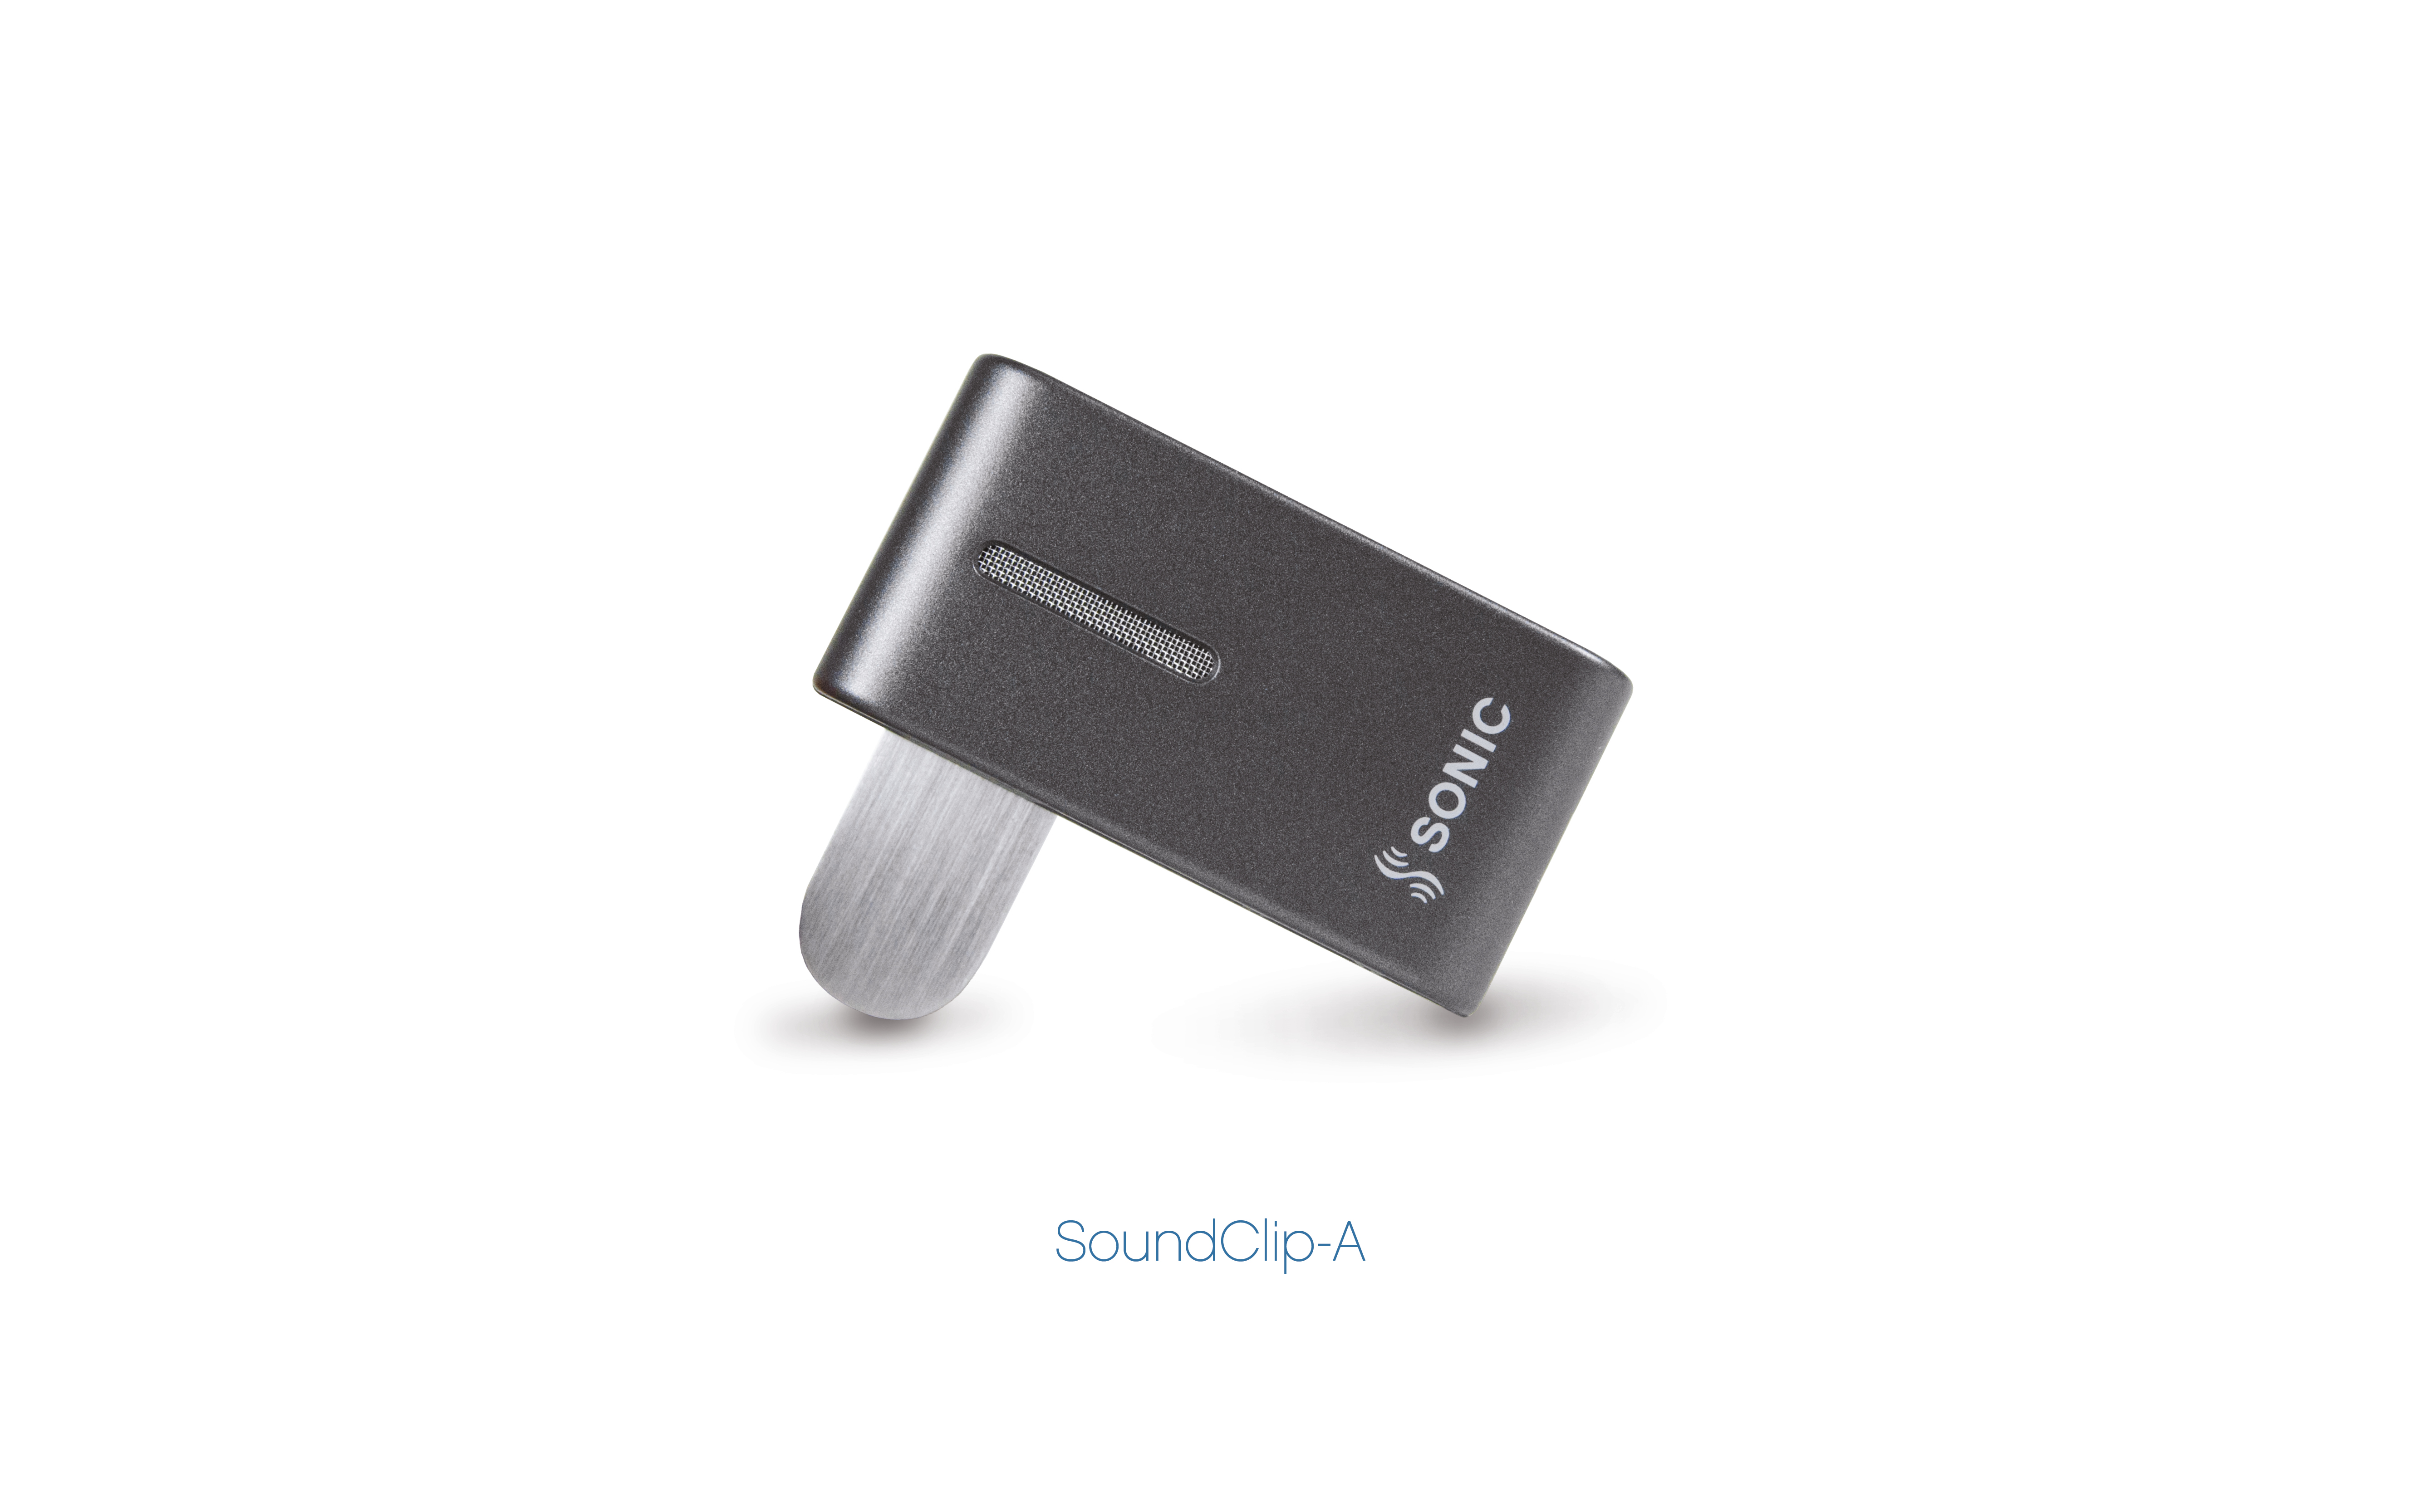 SoundClip-A